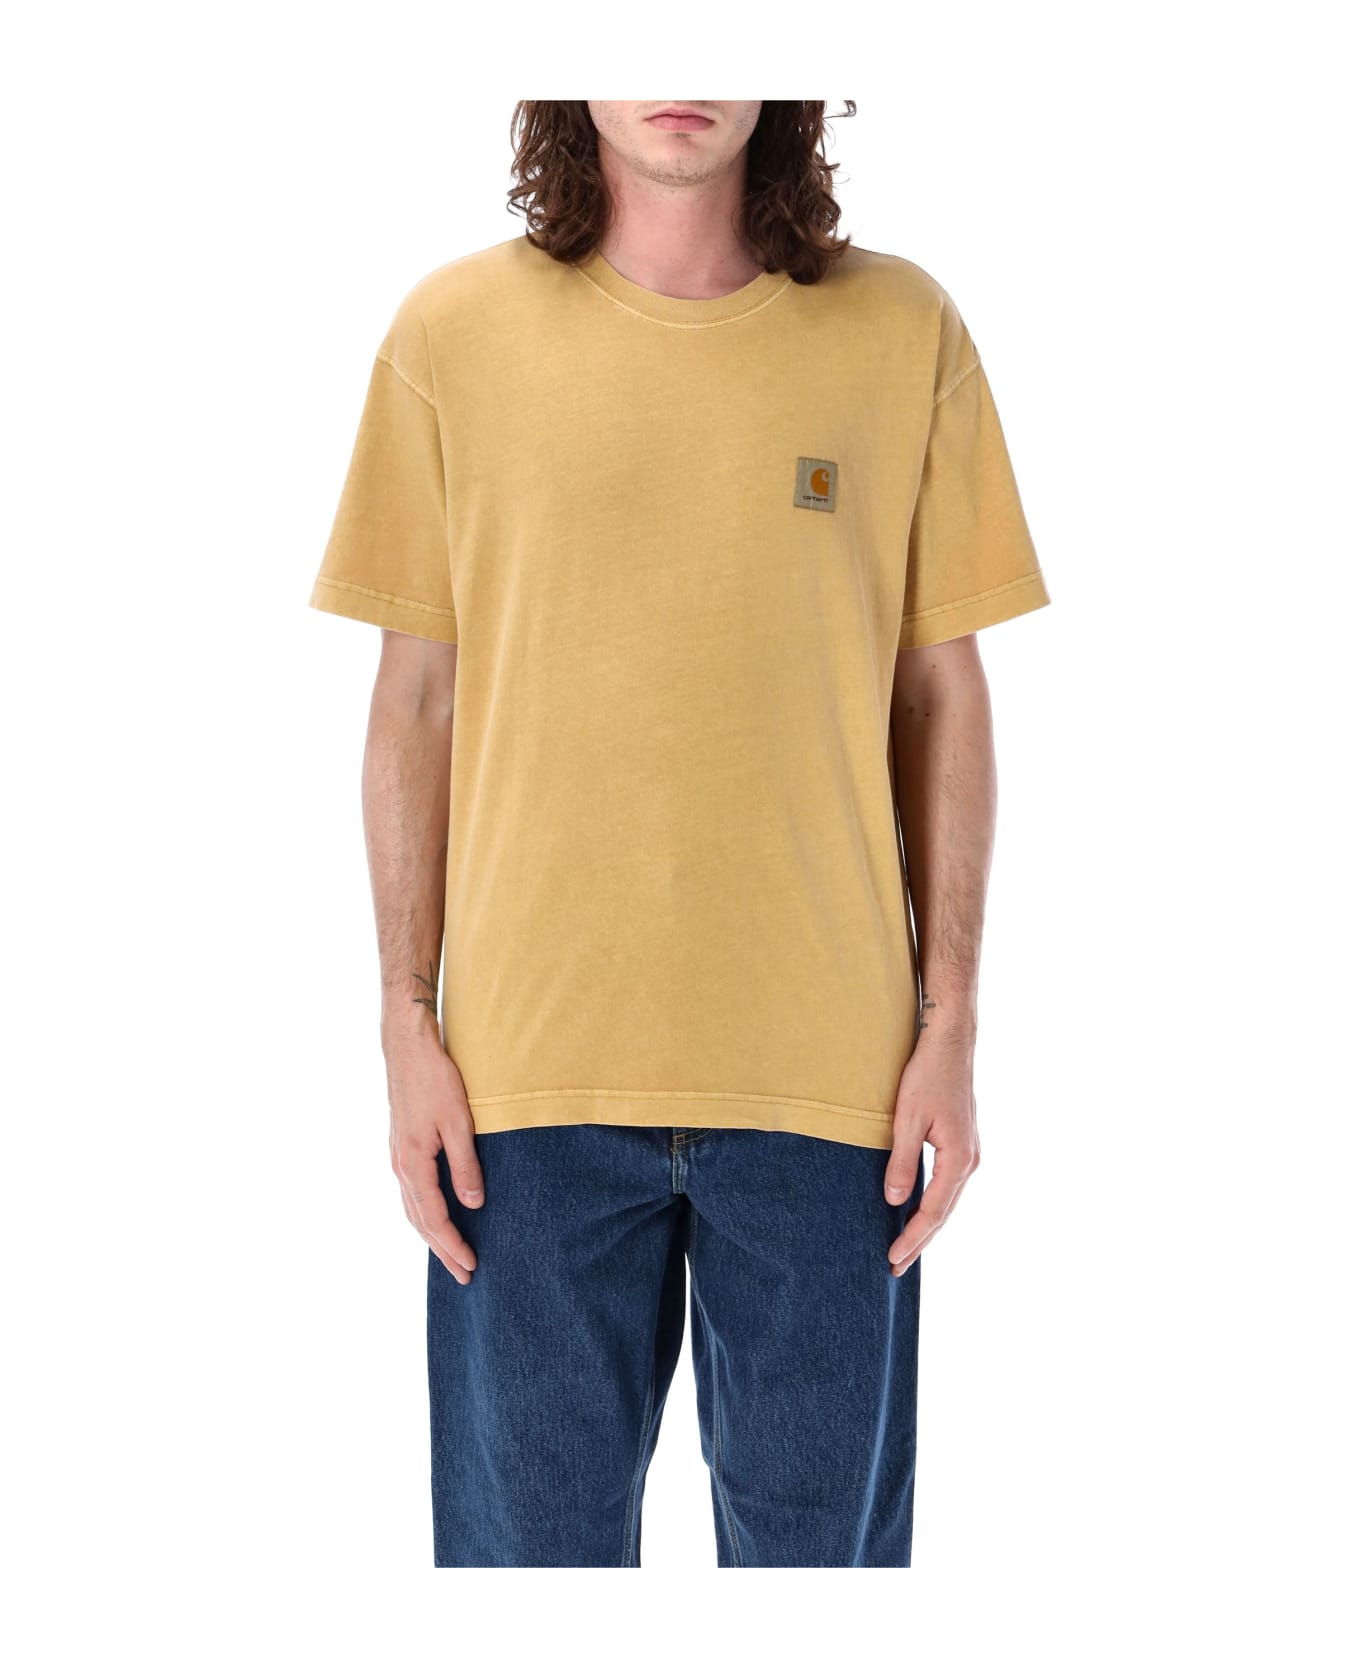 Carhartt S/s Nelson T-shirt - BOURBON